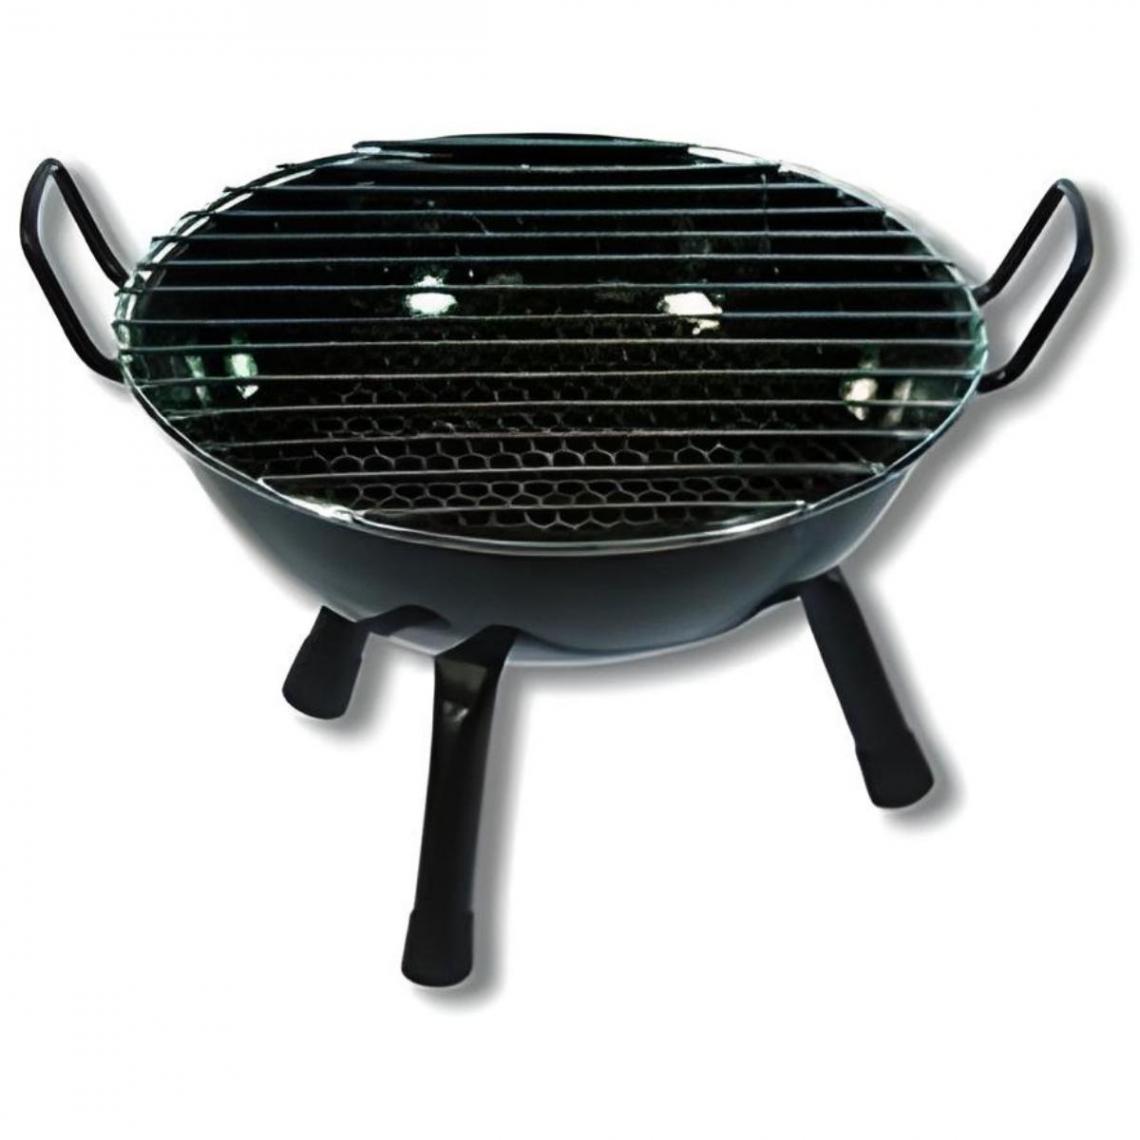 Visiodirect - Barbecue rond vitrifié pour table en Acier inoxydable coloris Noir - 32 x 20 cm - Barbecues charbon de bois